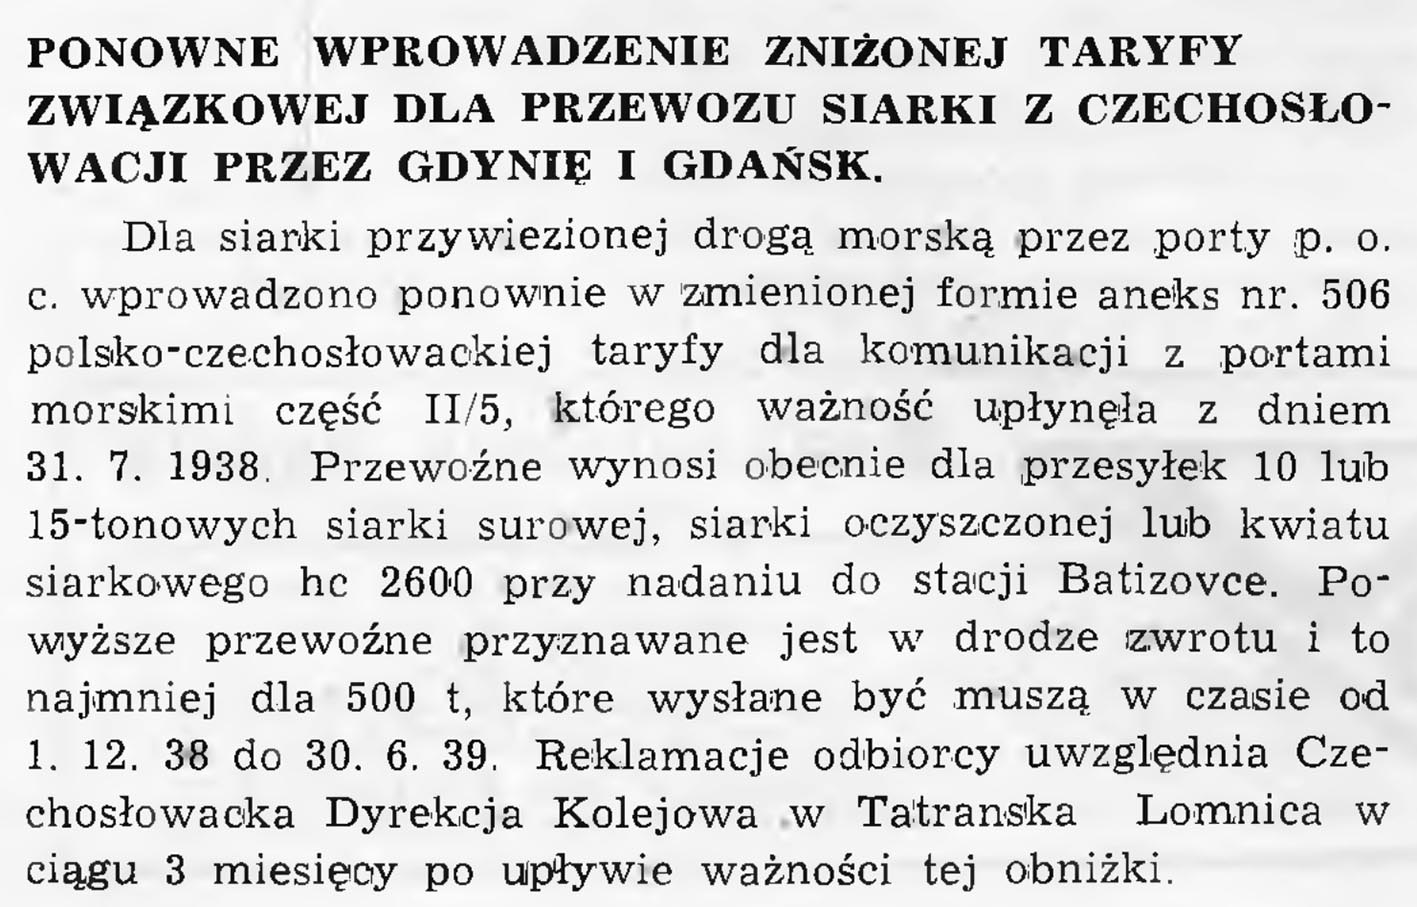 Ponowne wprowadzenie zniżonej taryfy związkowej dla przewozu siarki z Czechosłowacji przez Gdynię i Gdańsk // Wiadomości Portowe. - 1939, nr 1/2, s. 7